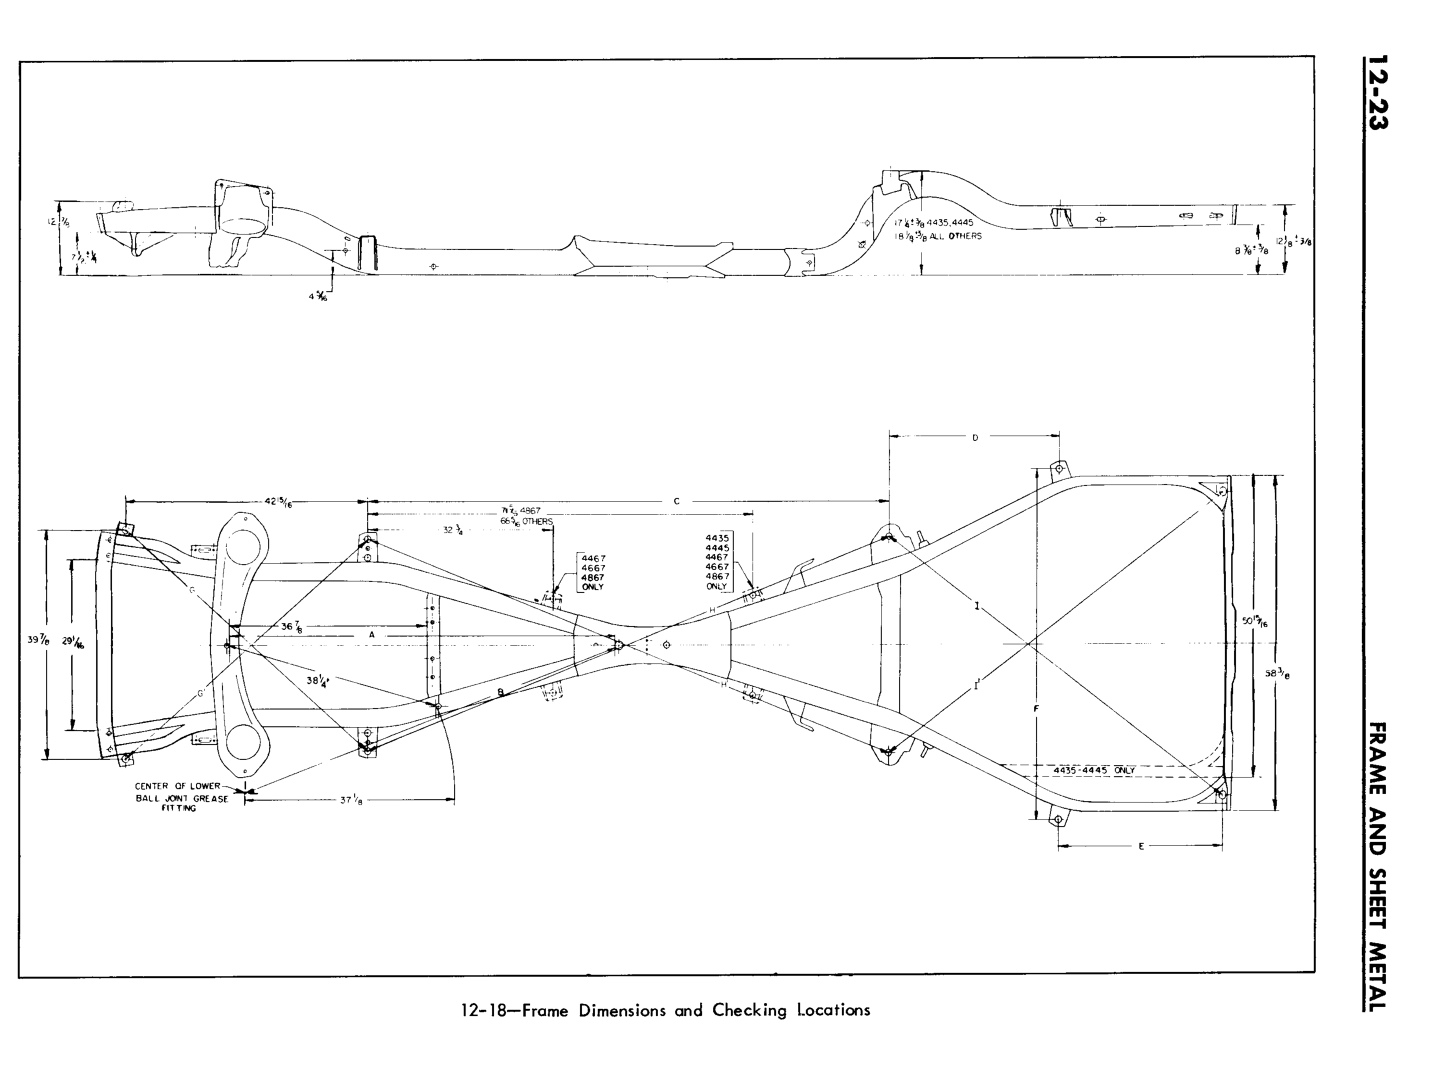 n_12 1961 Buick Shop Manual - Frame & Sheet Metal-023-023.jpg